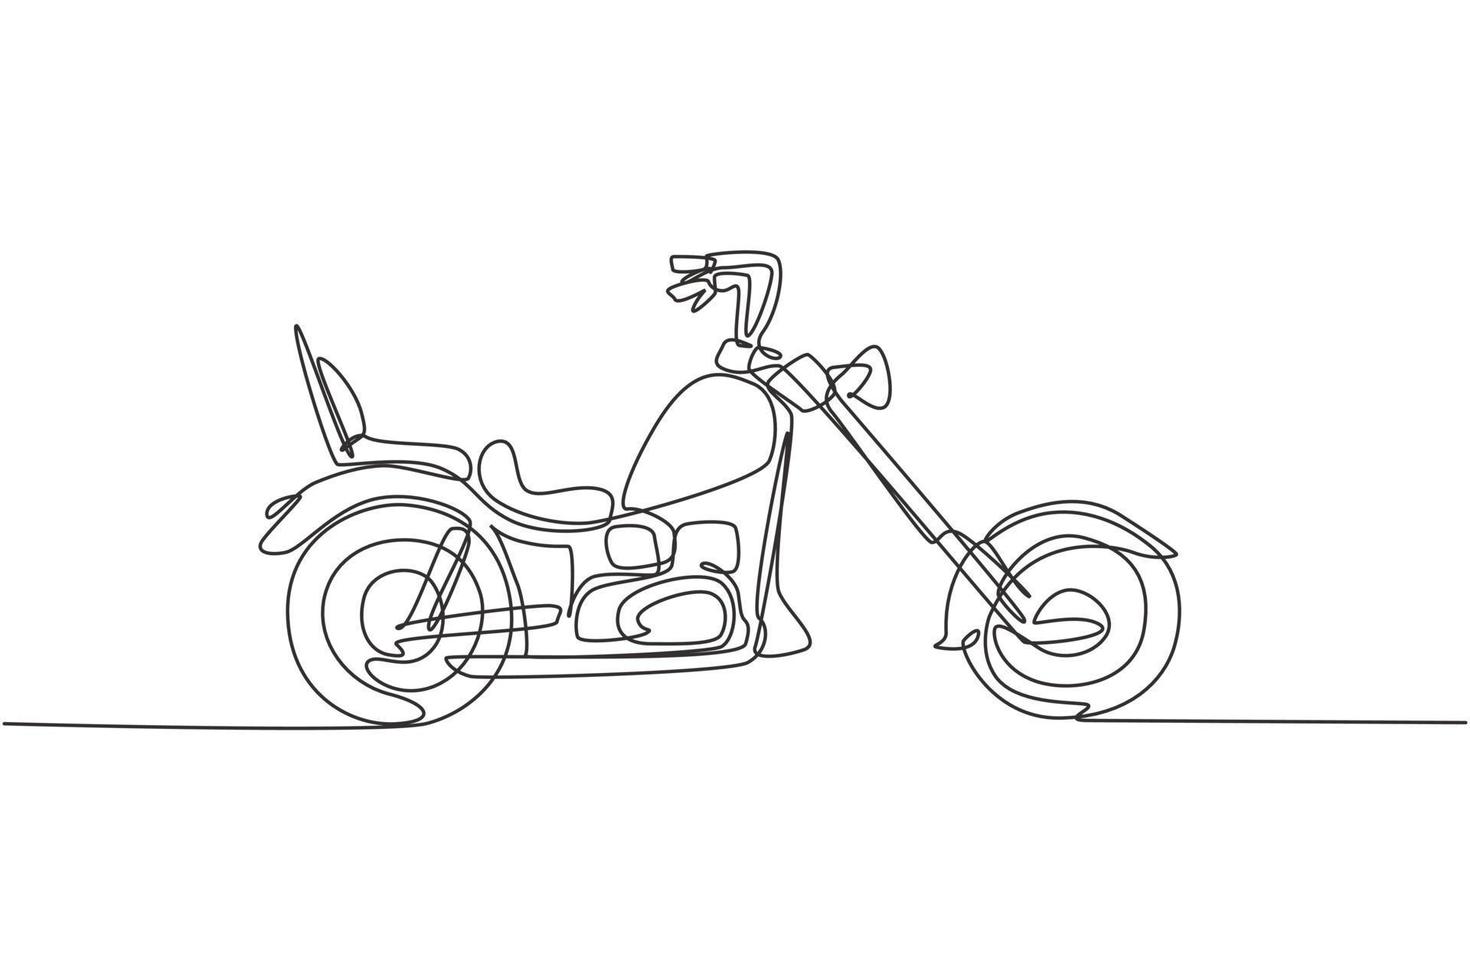 en enda radritning av gammal retro vintage chopper motorcykel. vintage motorcykel transport koncept kontinuerlig linje grafisk rita design vektor illustration